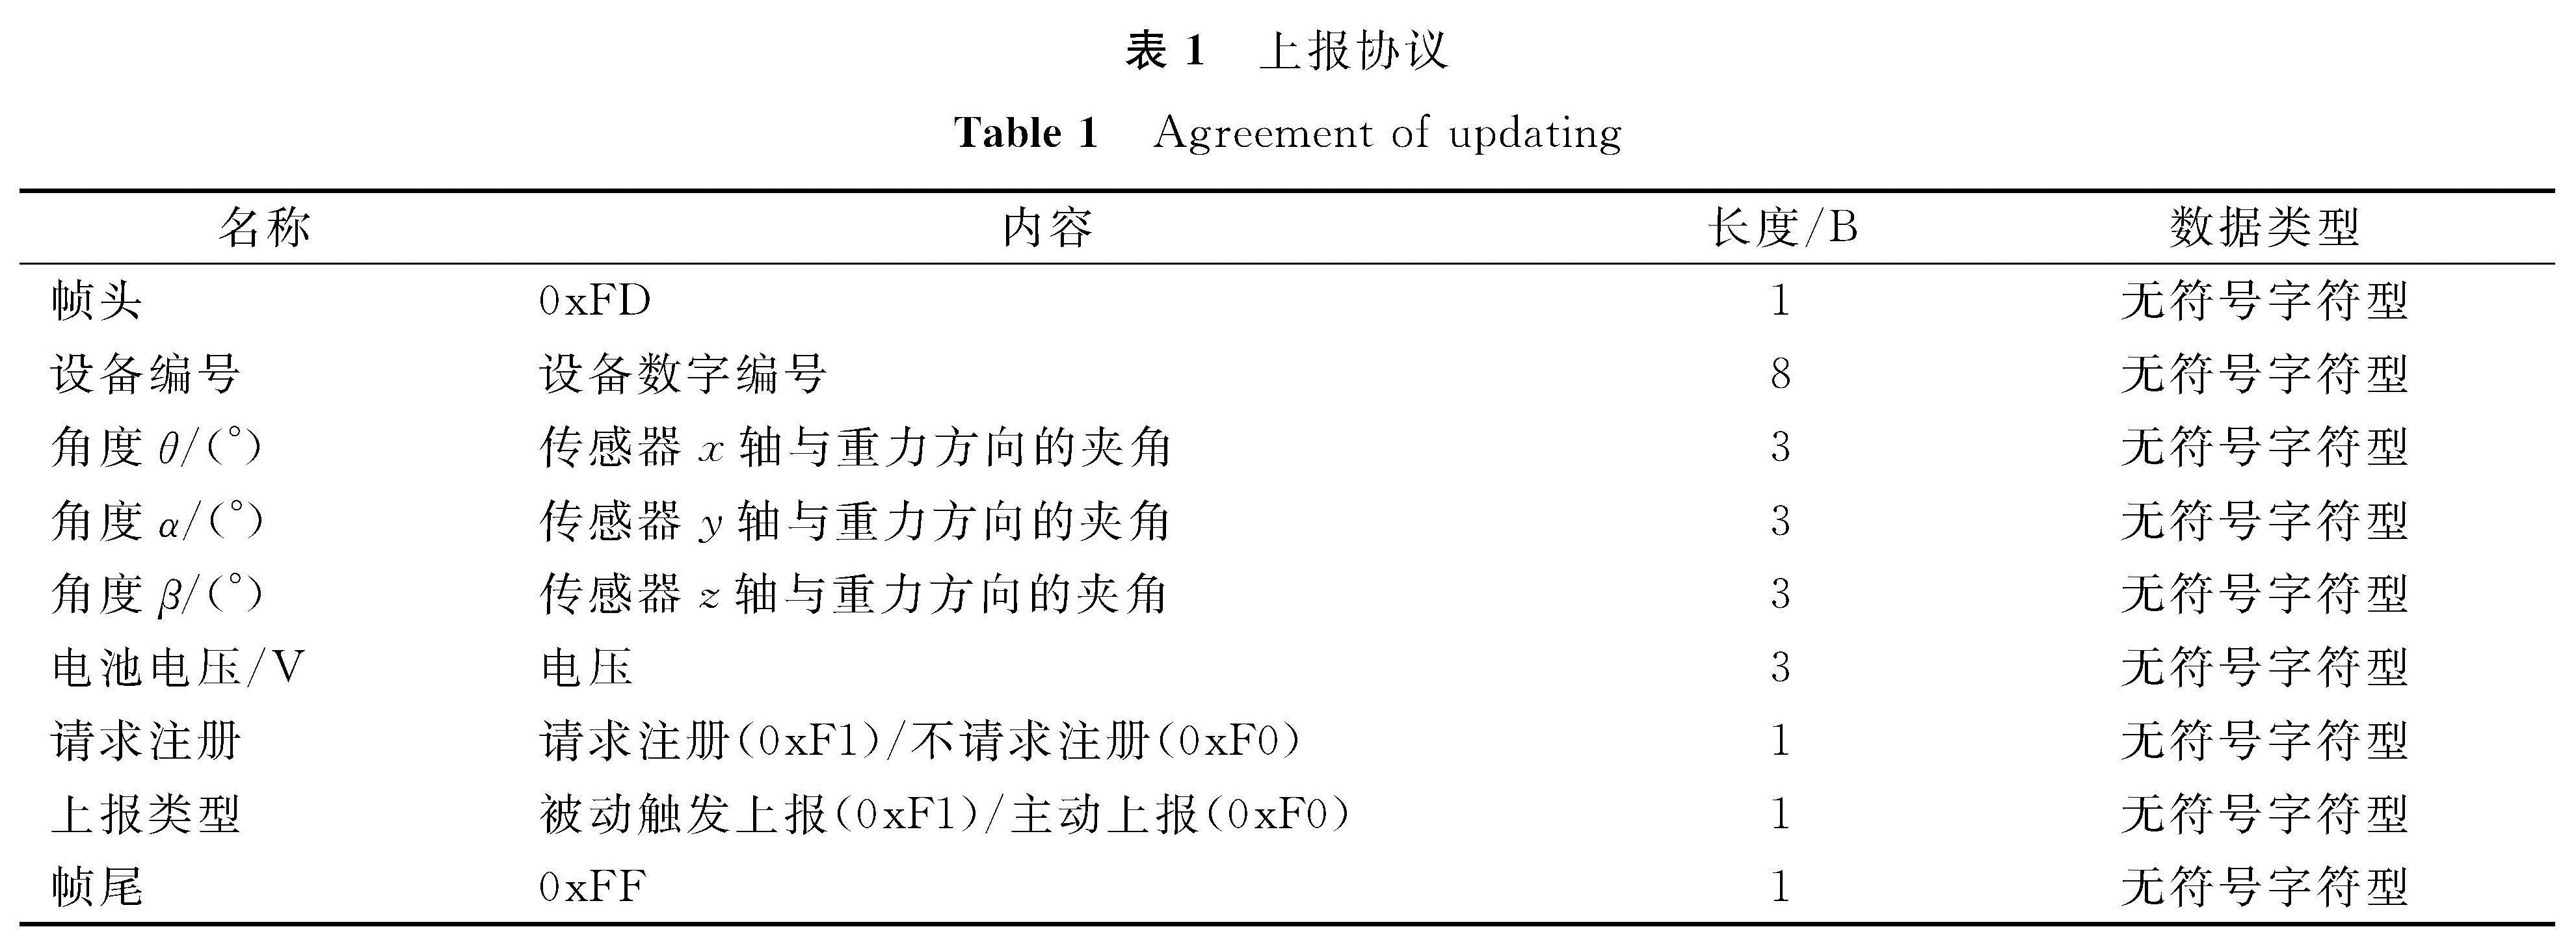 表1 上报协议<br/>Table 1 Agreement of updating